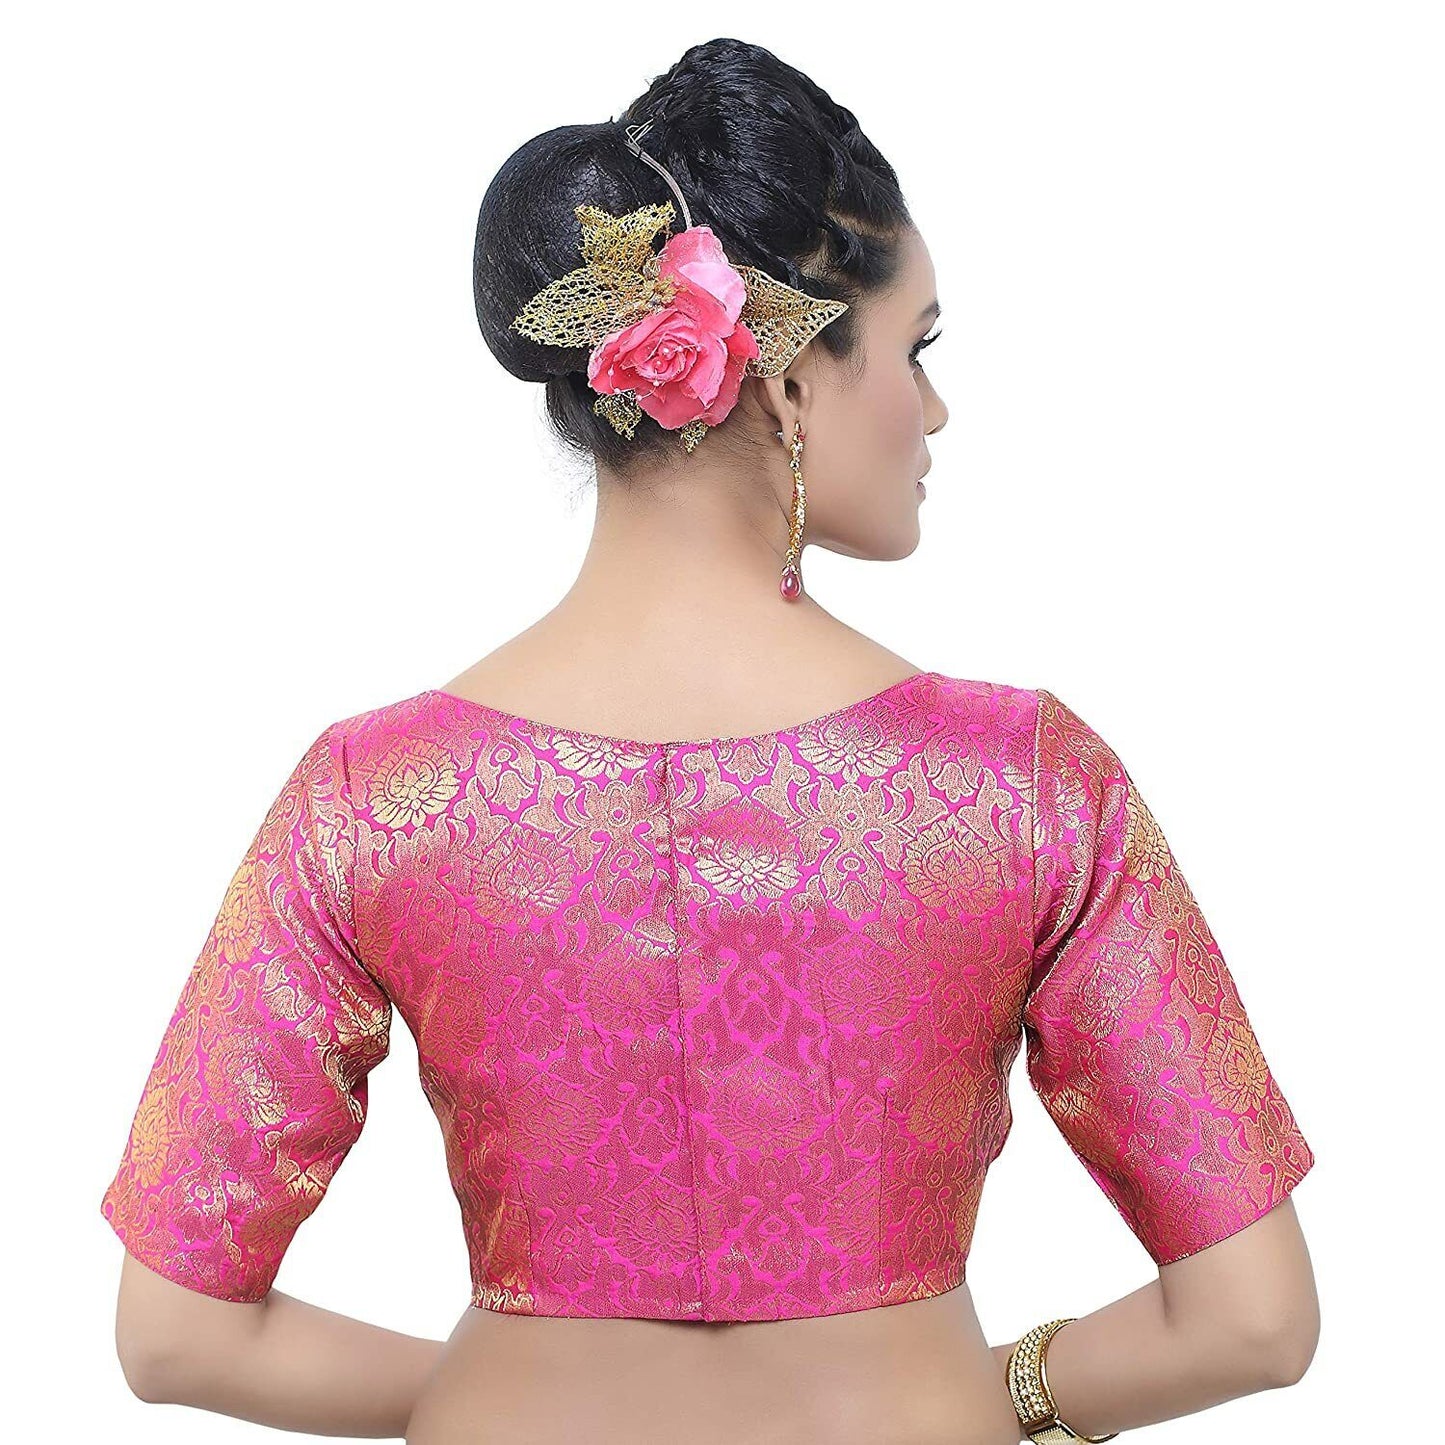 Hot Pink Banarasi Silk Saree Blouse, Indian Saree Blouse Readymade Saree Blouse, Indian Saree Blouse, Readymade Sari Blouse, Saree Blouse Traditional Indian Saree Blouse, Ready To Wear Blouse, Indian Blouse